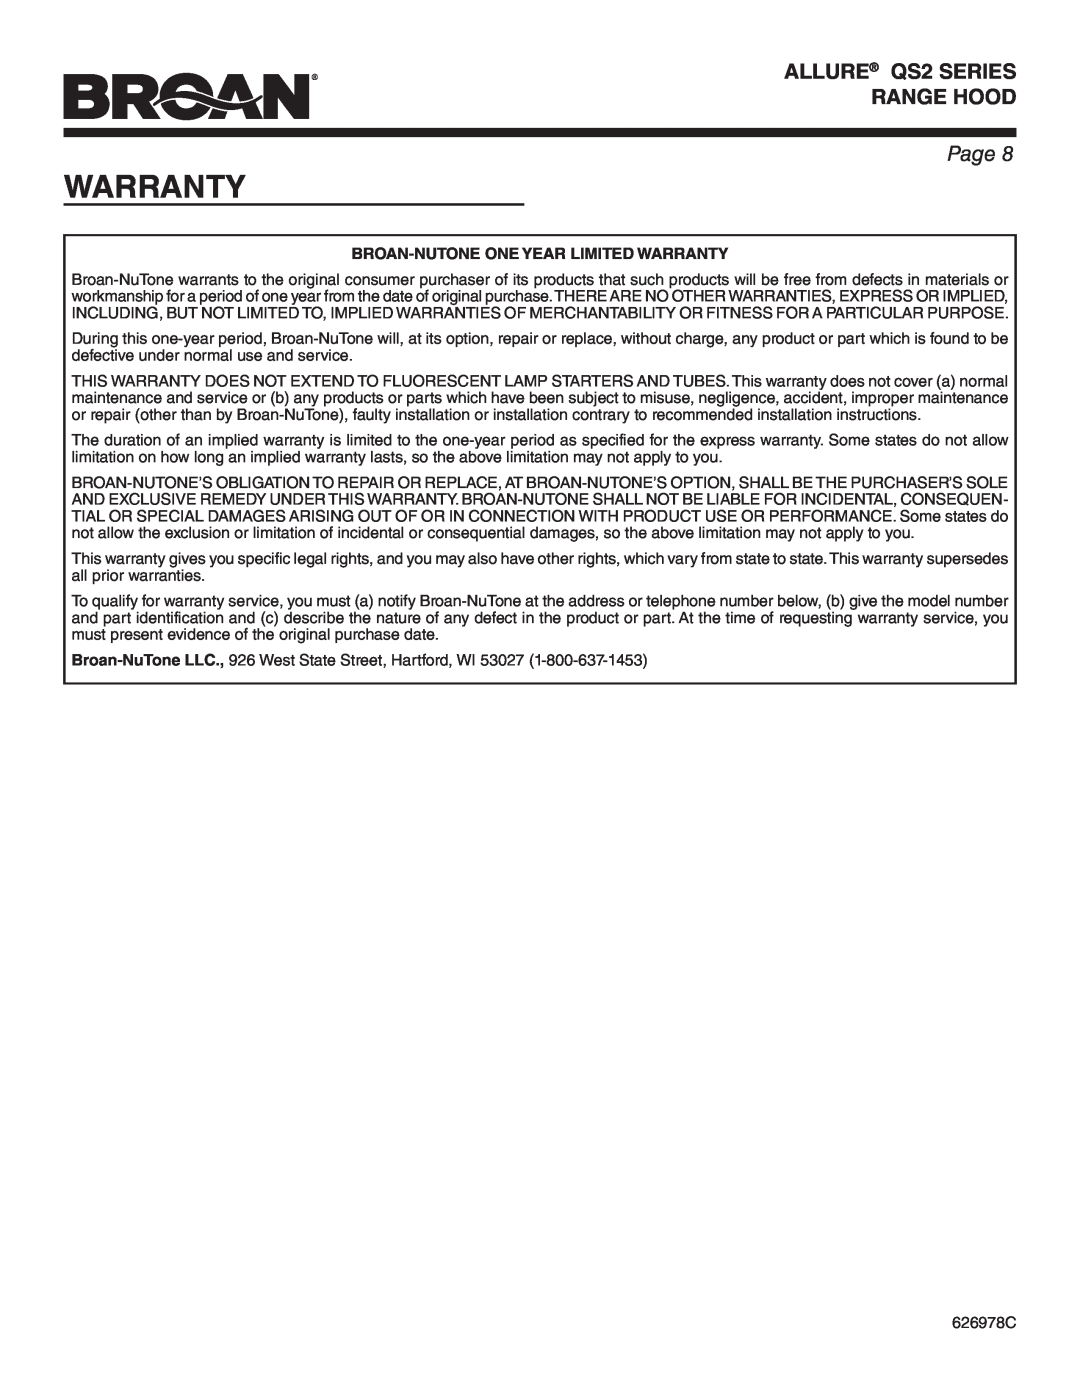 Broan QS242SS warranty Broan-Nutone One Year Limited Warranty, ALLURE QS2 SERIES RANGE HOOD, Page 